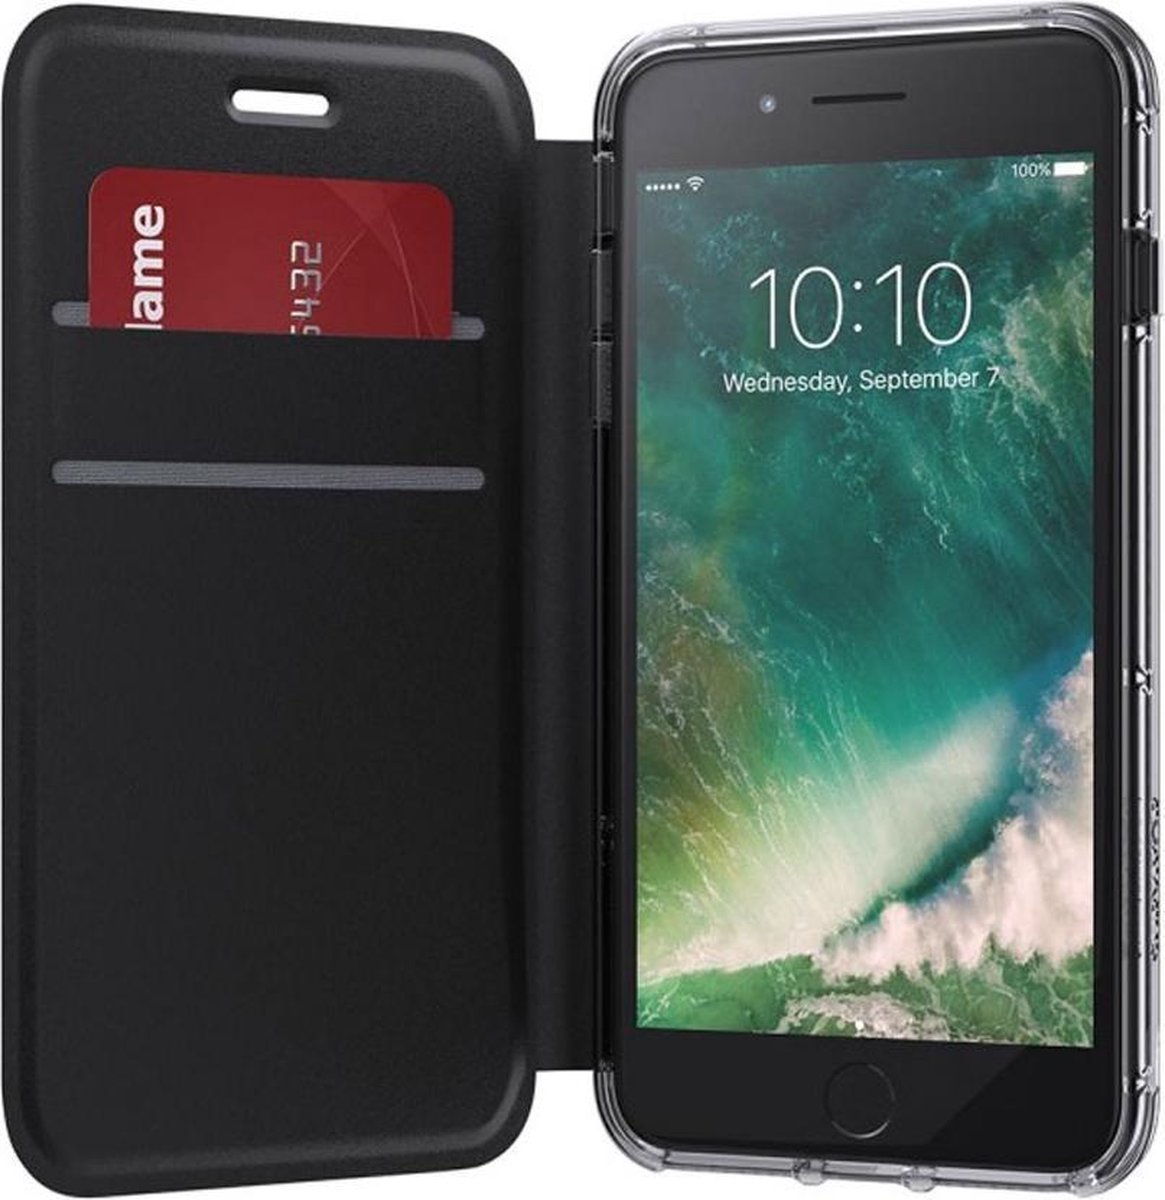 GRIFFIN Survivor Transparant Wallet Hoes iPhone 6 / 6S / 7 PLUS